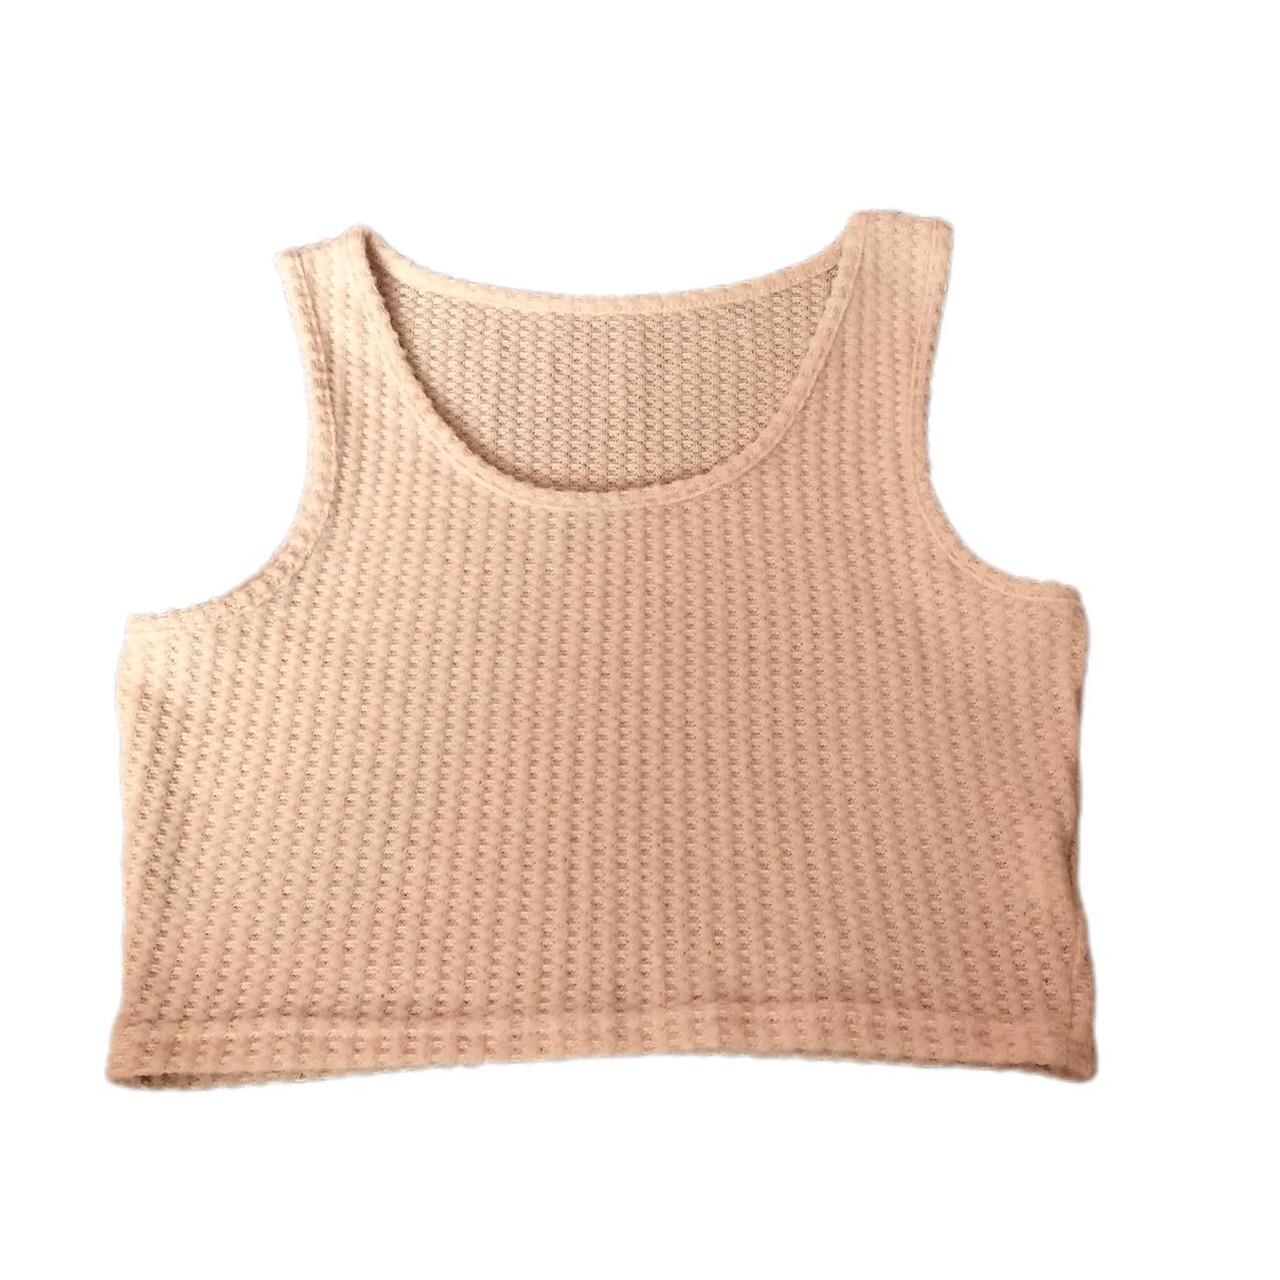 Zara limitless contour collection tan crop top. Size - Depop